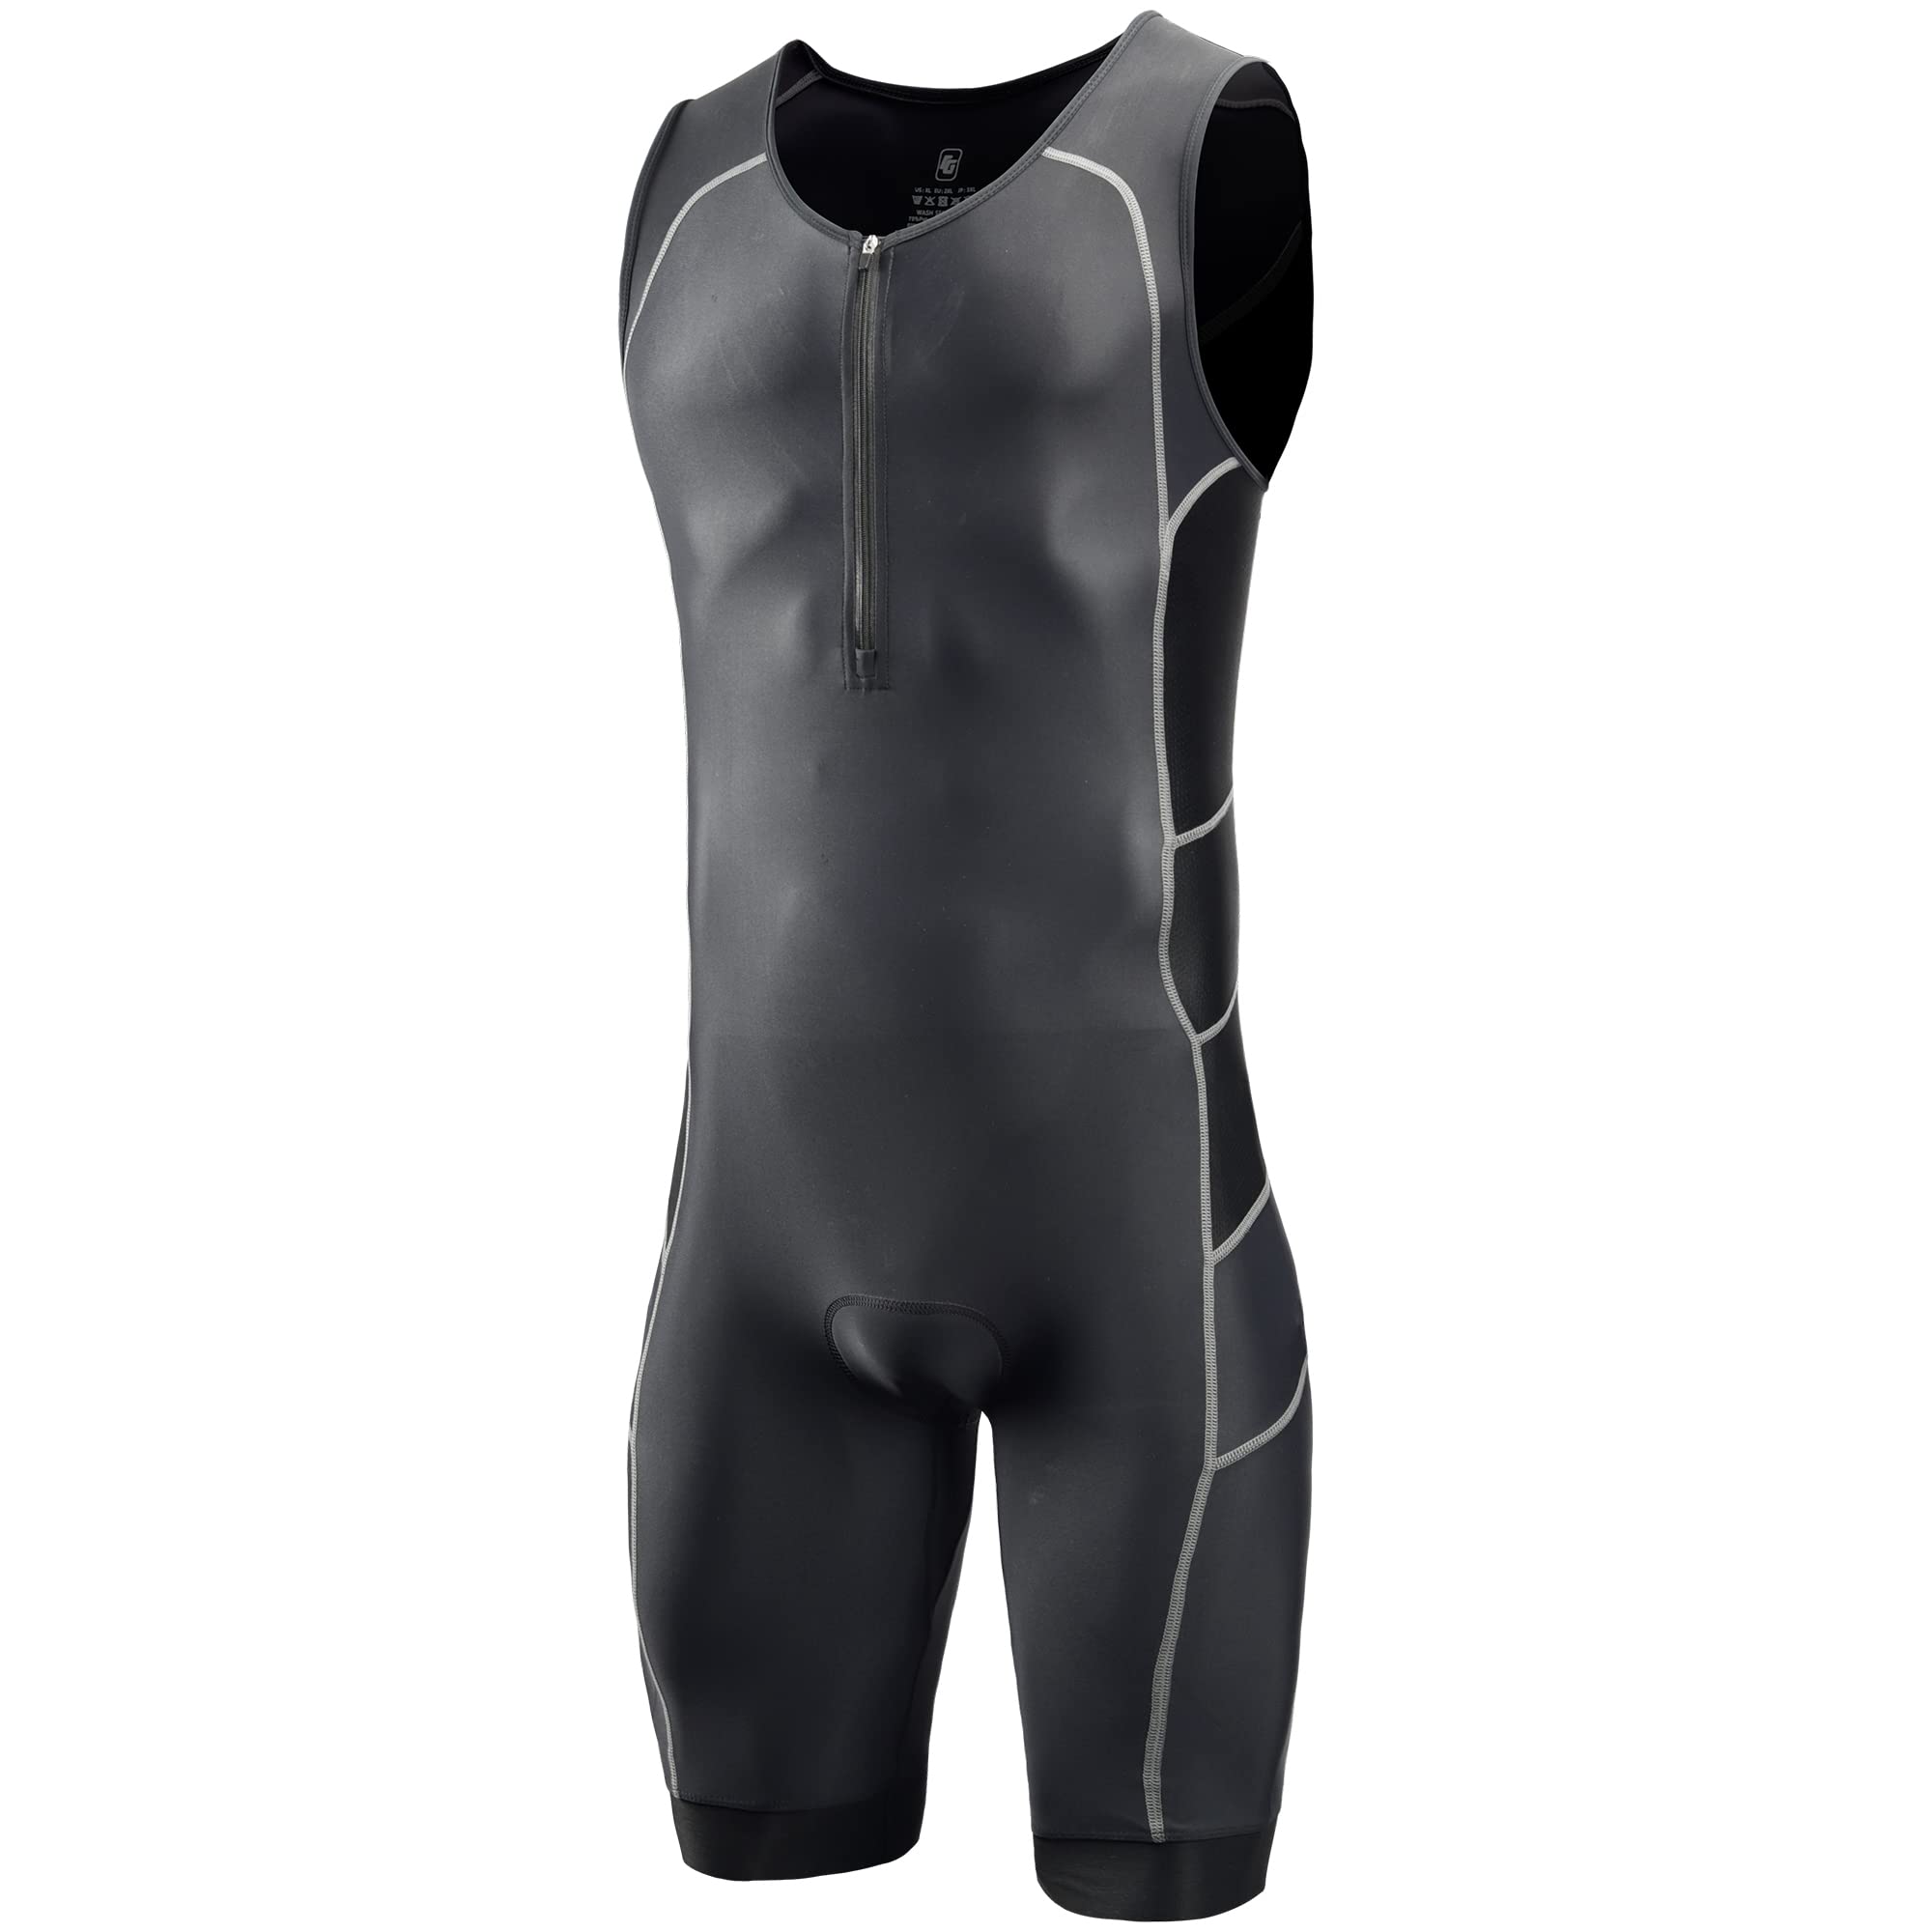 CGLRybO Herren Triathlon-Anzug mit kurzen Ärmeln, ideal für Ironman Racing Tri Anzug, Schwarz , L